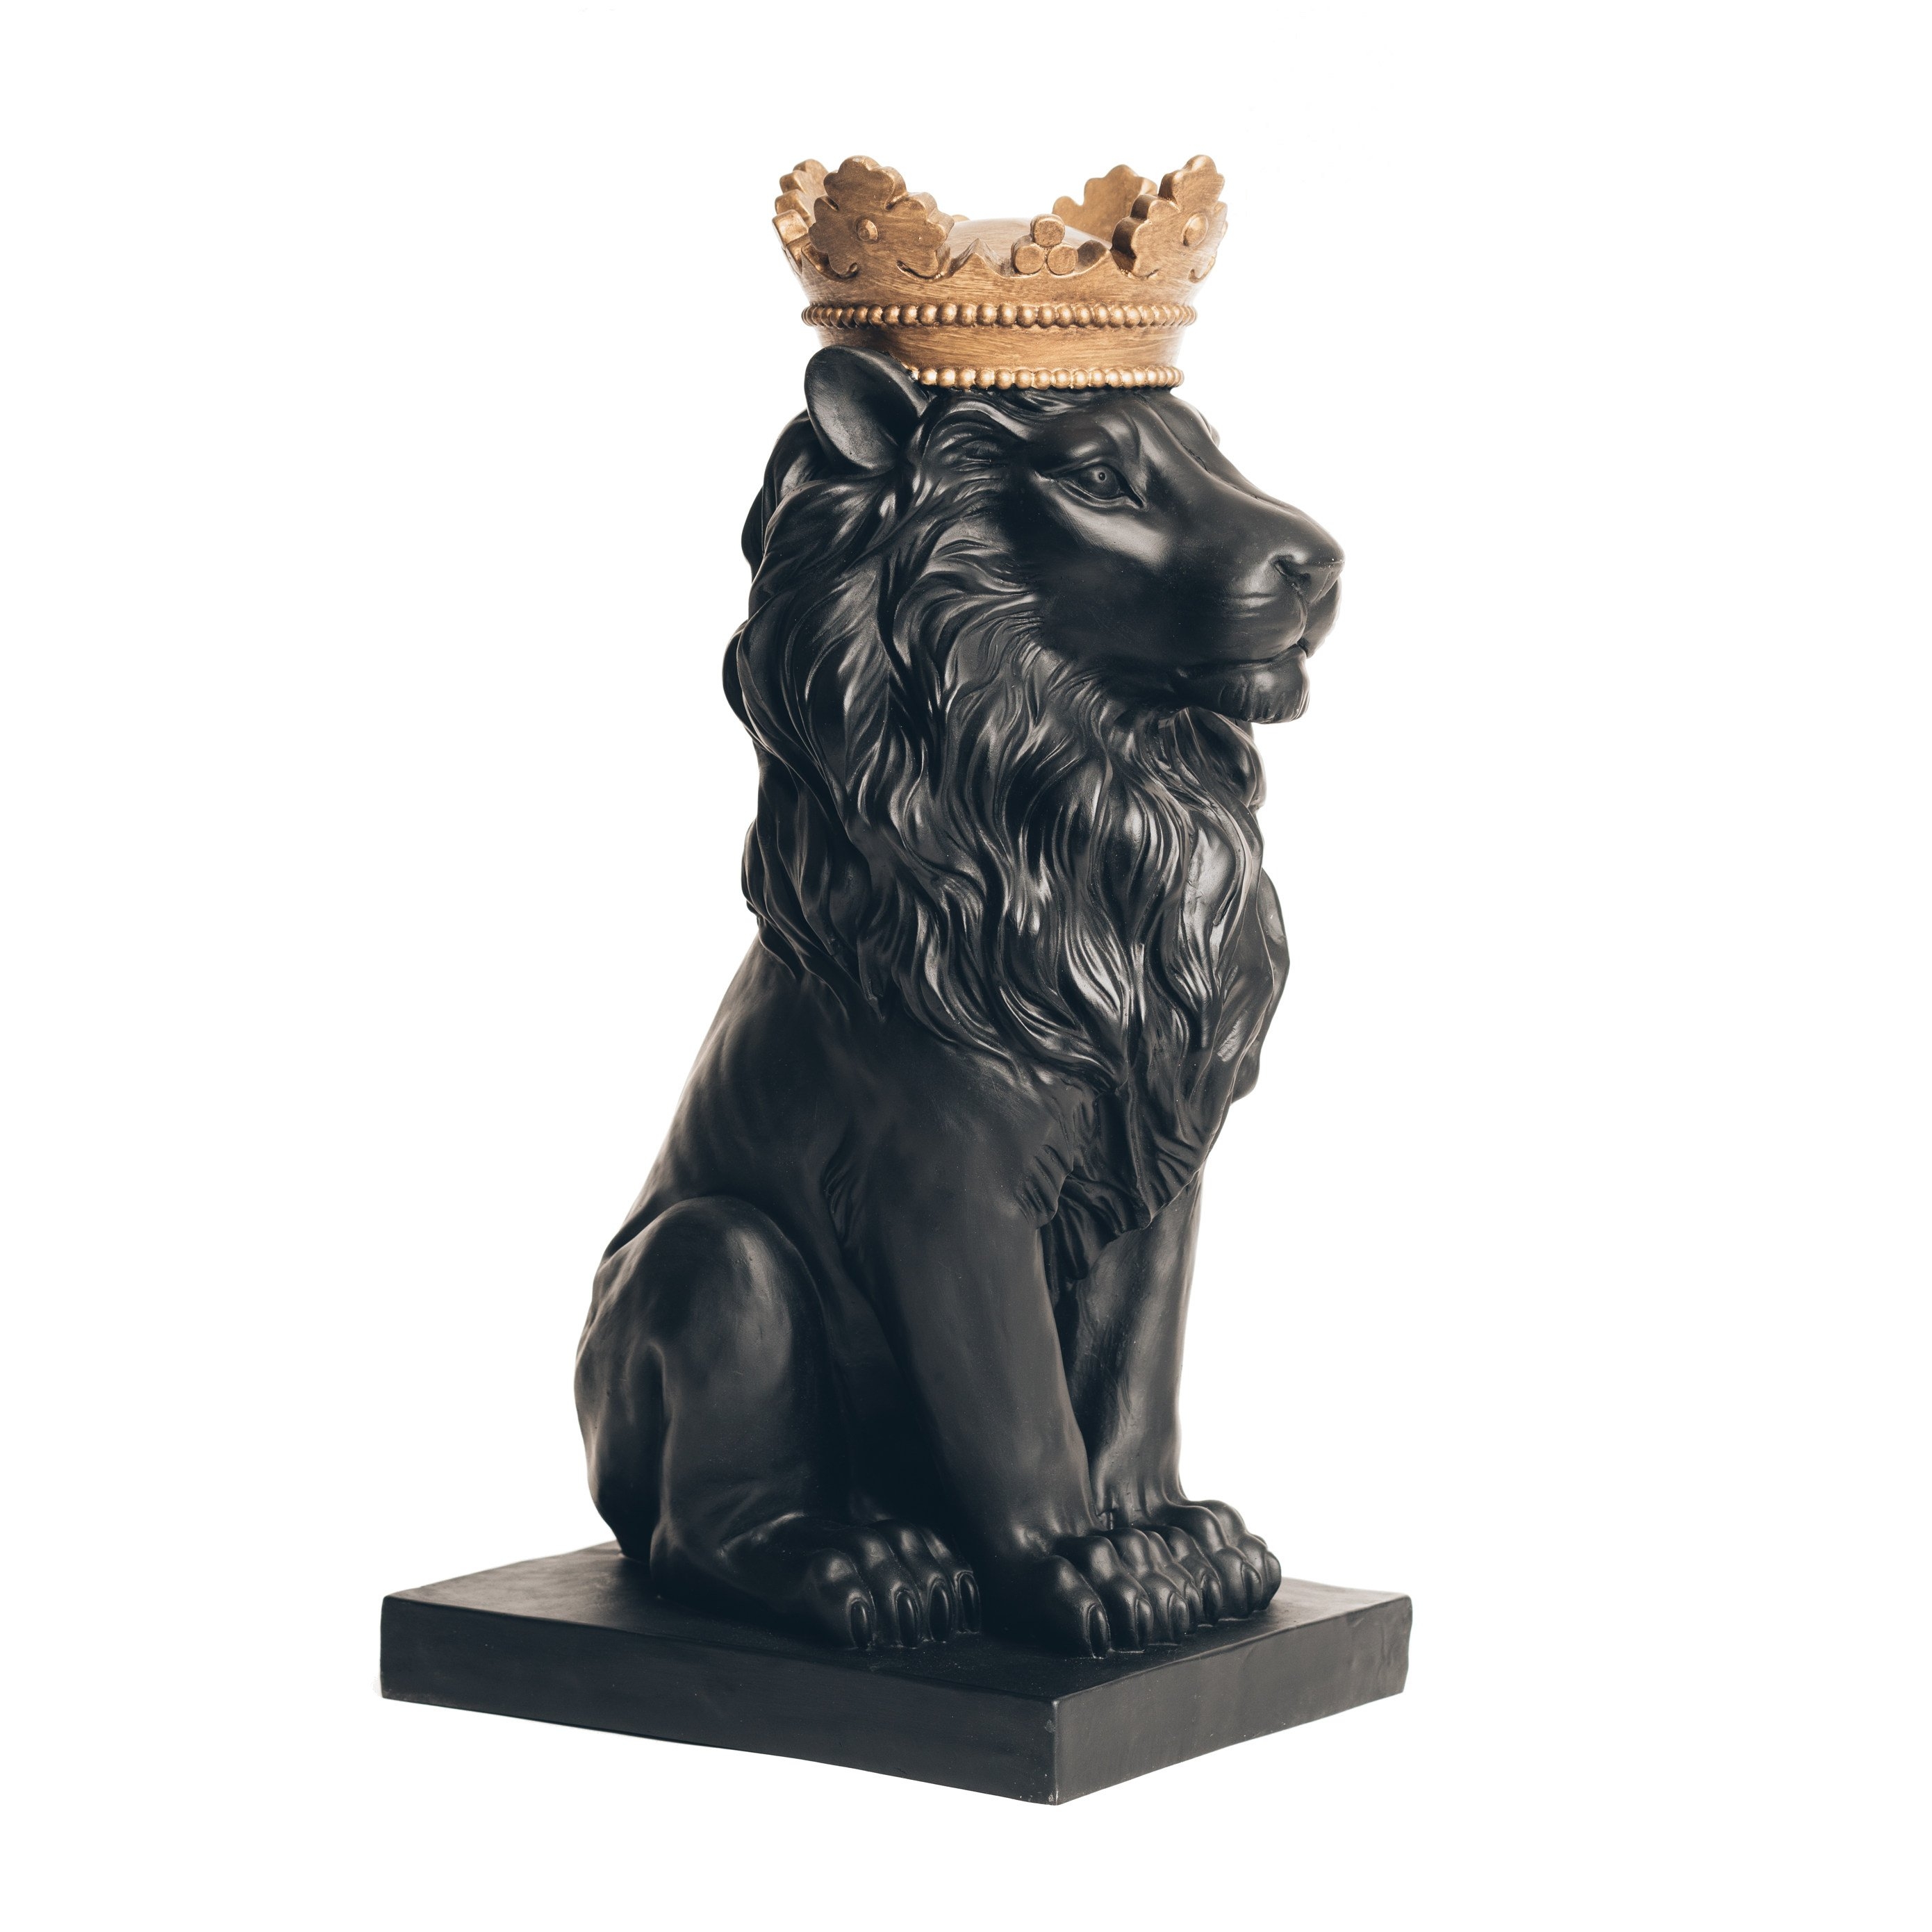 Sculpture Black Lion with Gold Crown – 37cm x 15cm x 23cm